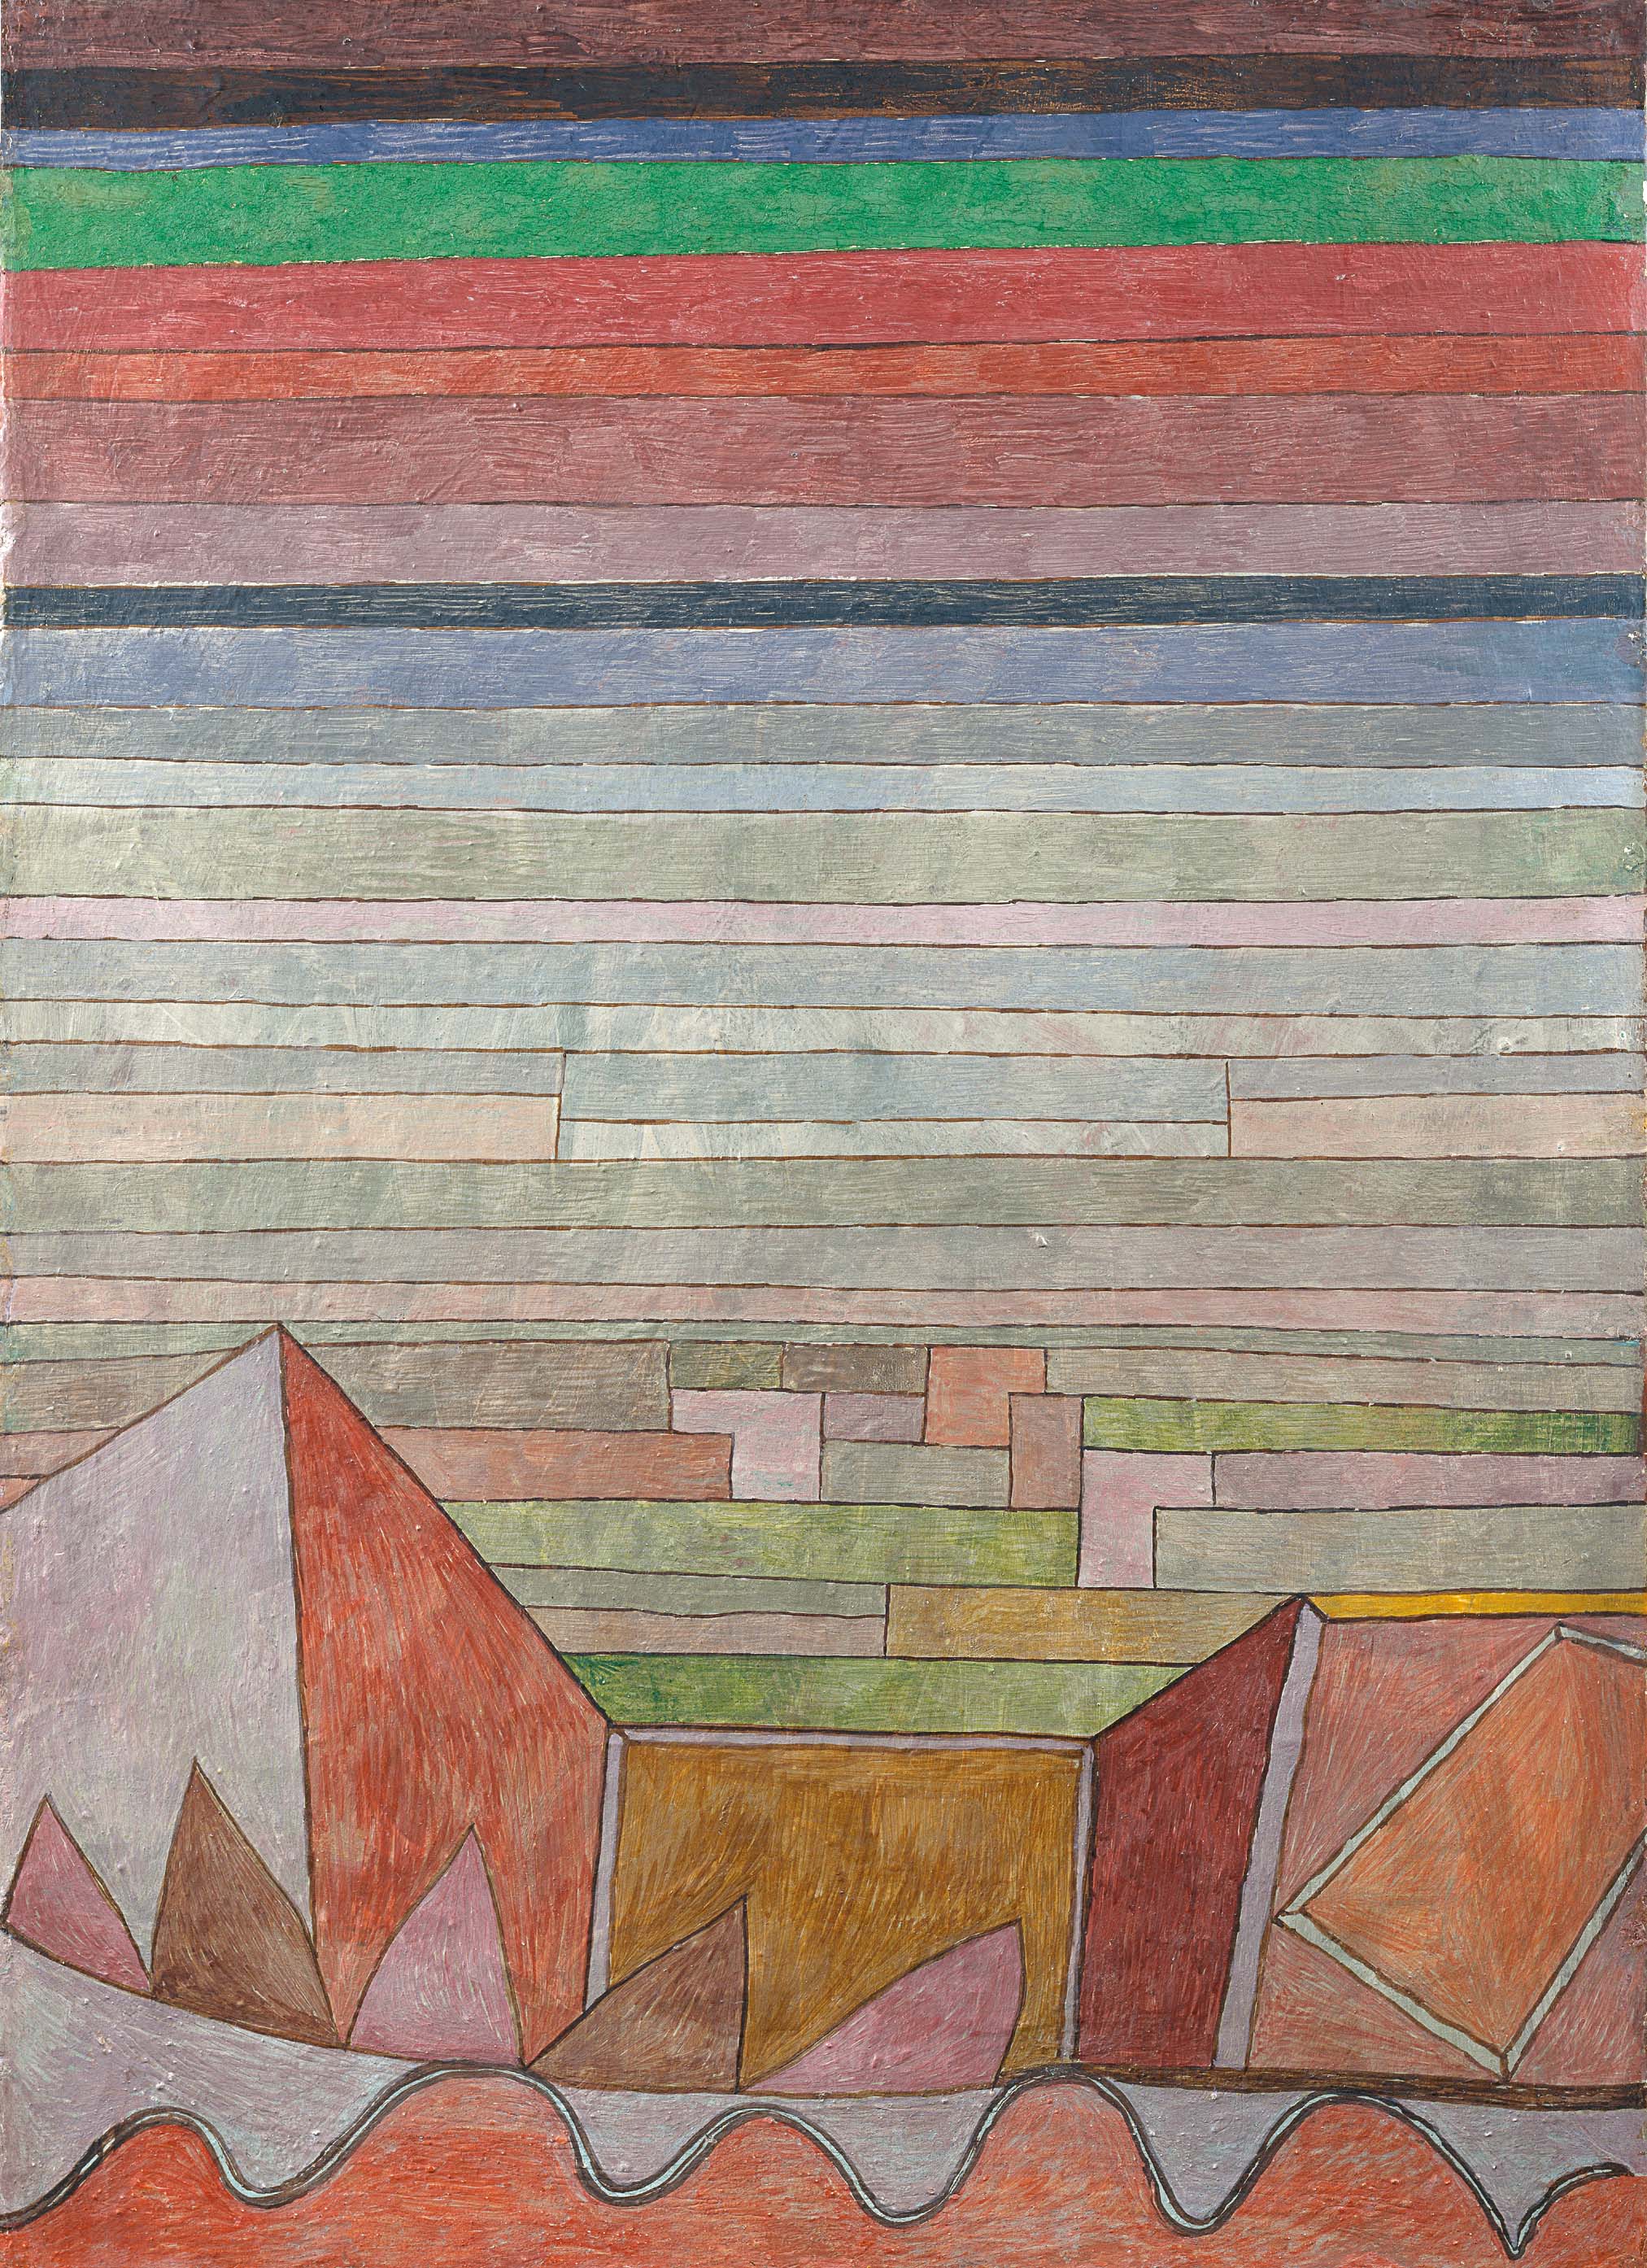 उपजाऊ देश का दृश्य by Paul Klee - १९३२ - ४८.५ x ३४.५ से.मी. 